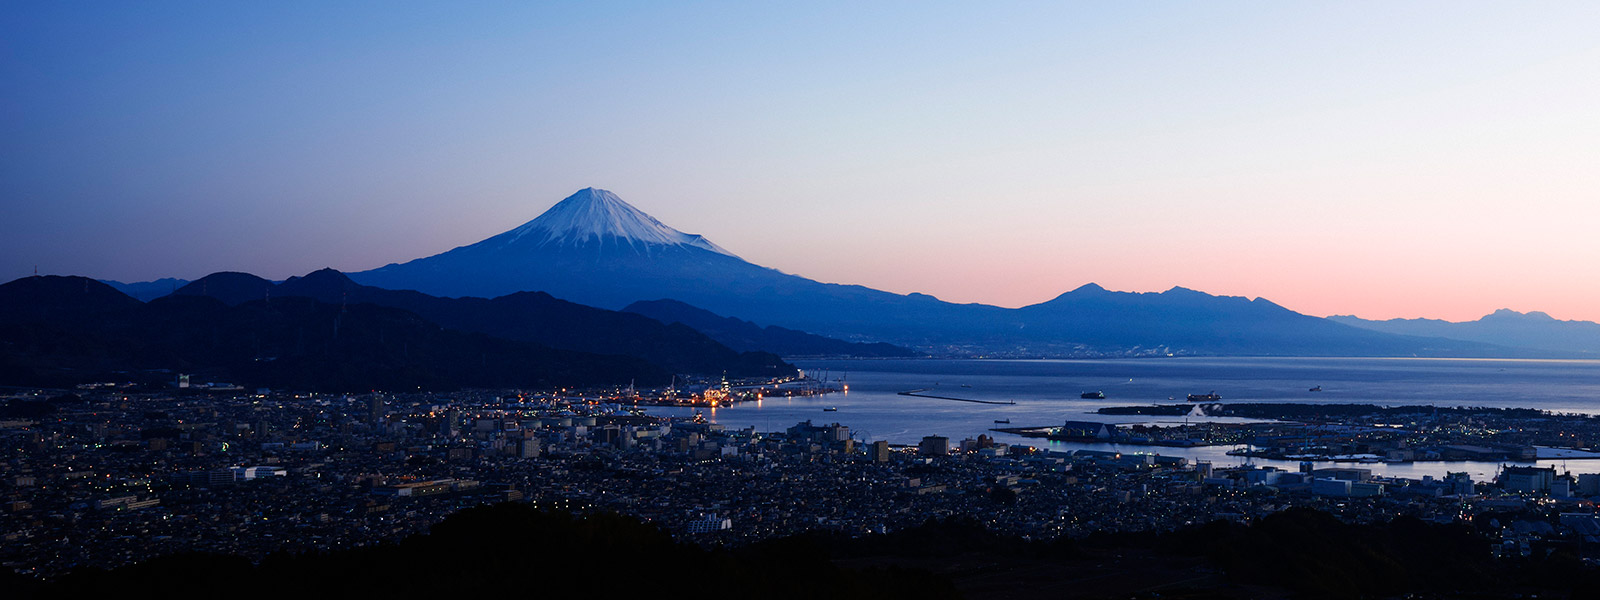 日本平ホテル 静岡市から望む富士山の絶景と和洋の美食でお寛ぎを 国宝 久能山東照宮も間近